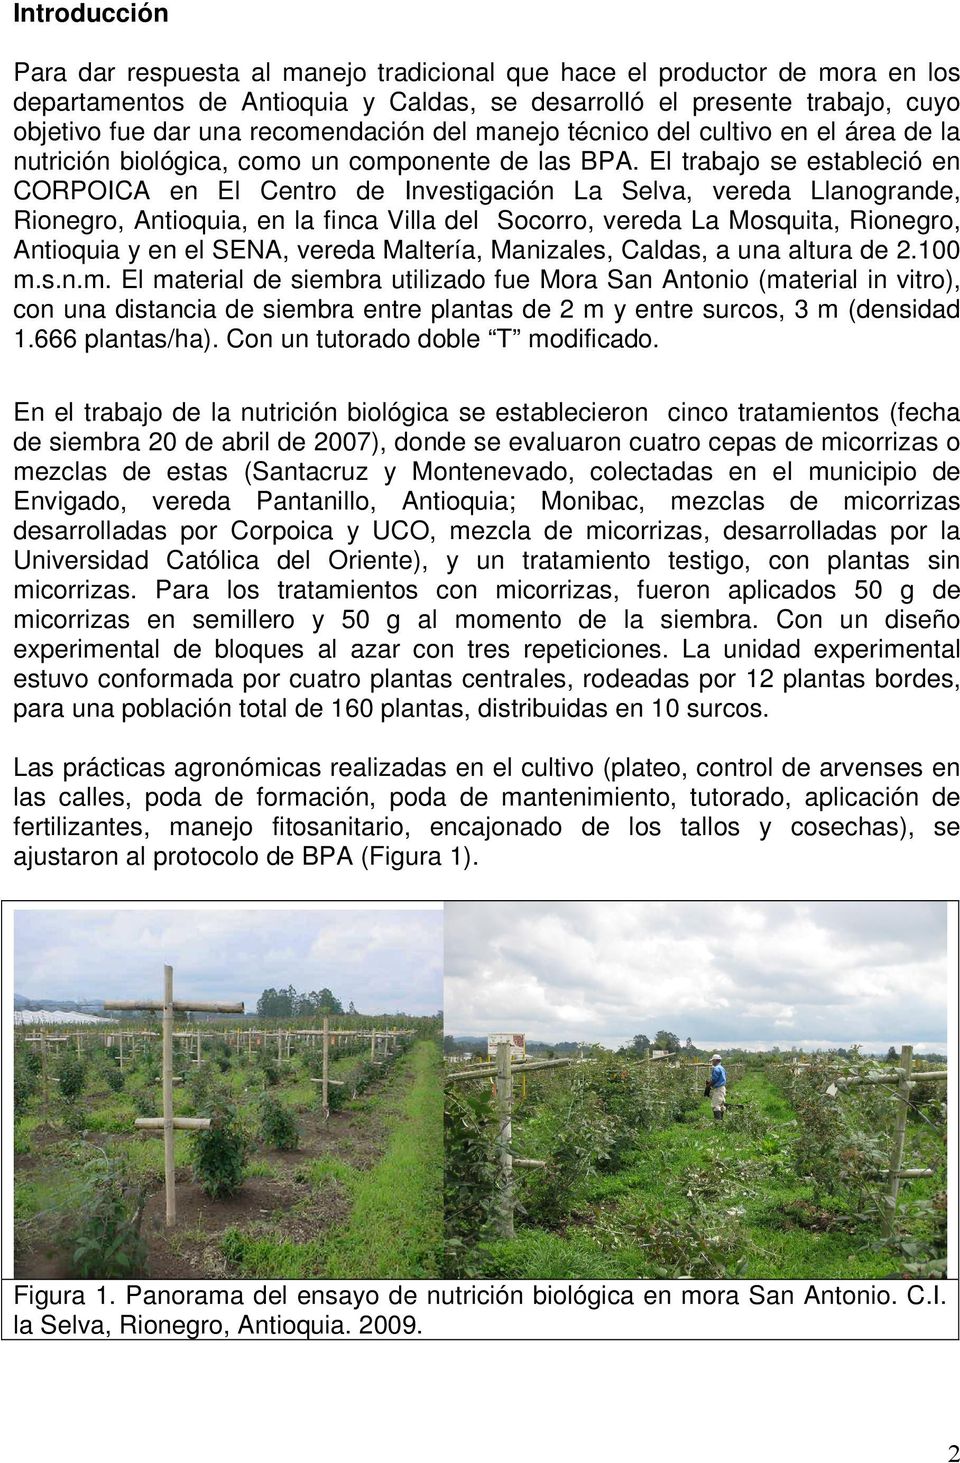 El trabajo se estableció en CORPOICA en El Centro de Investigación La Selva, vereda Llanogrande, Rionegro, Antioquia, en la finca Villa del Socorro, vereda La Mosquita, Rionegro, Antioquia y en el